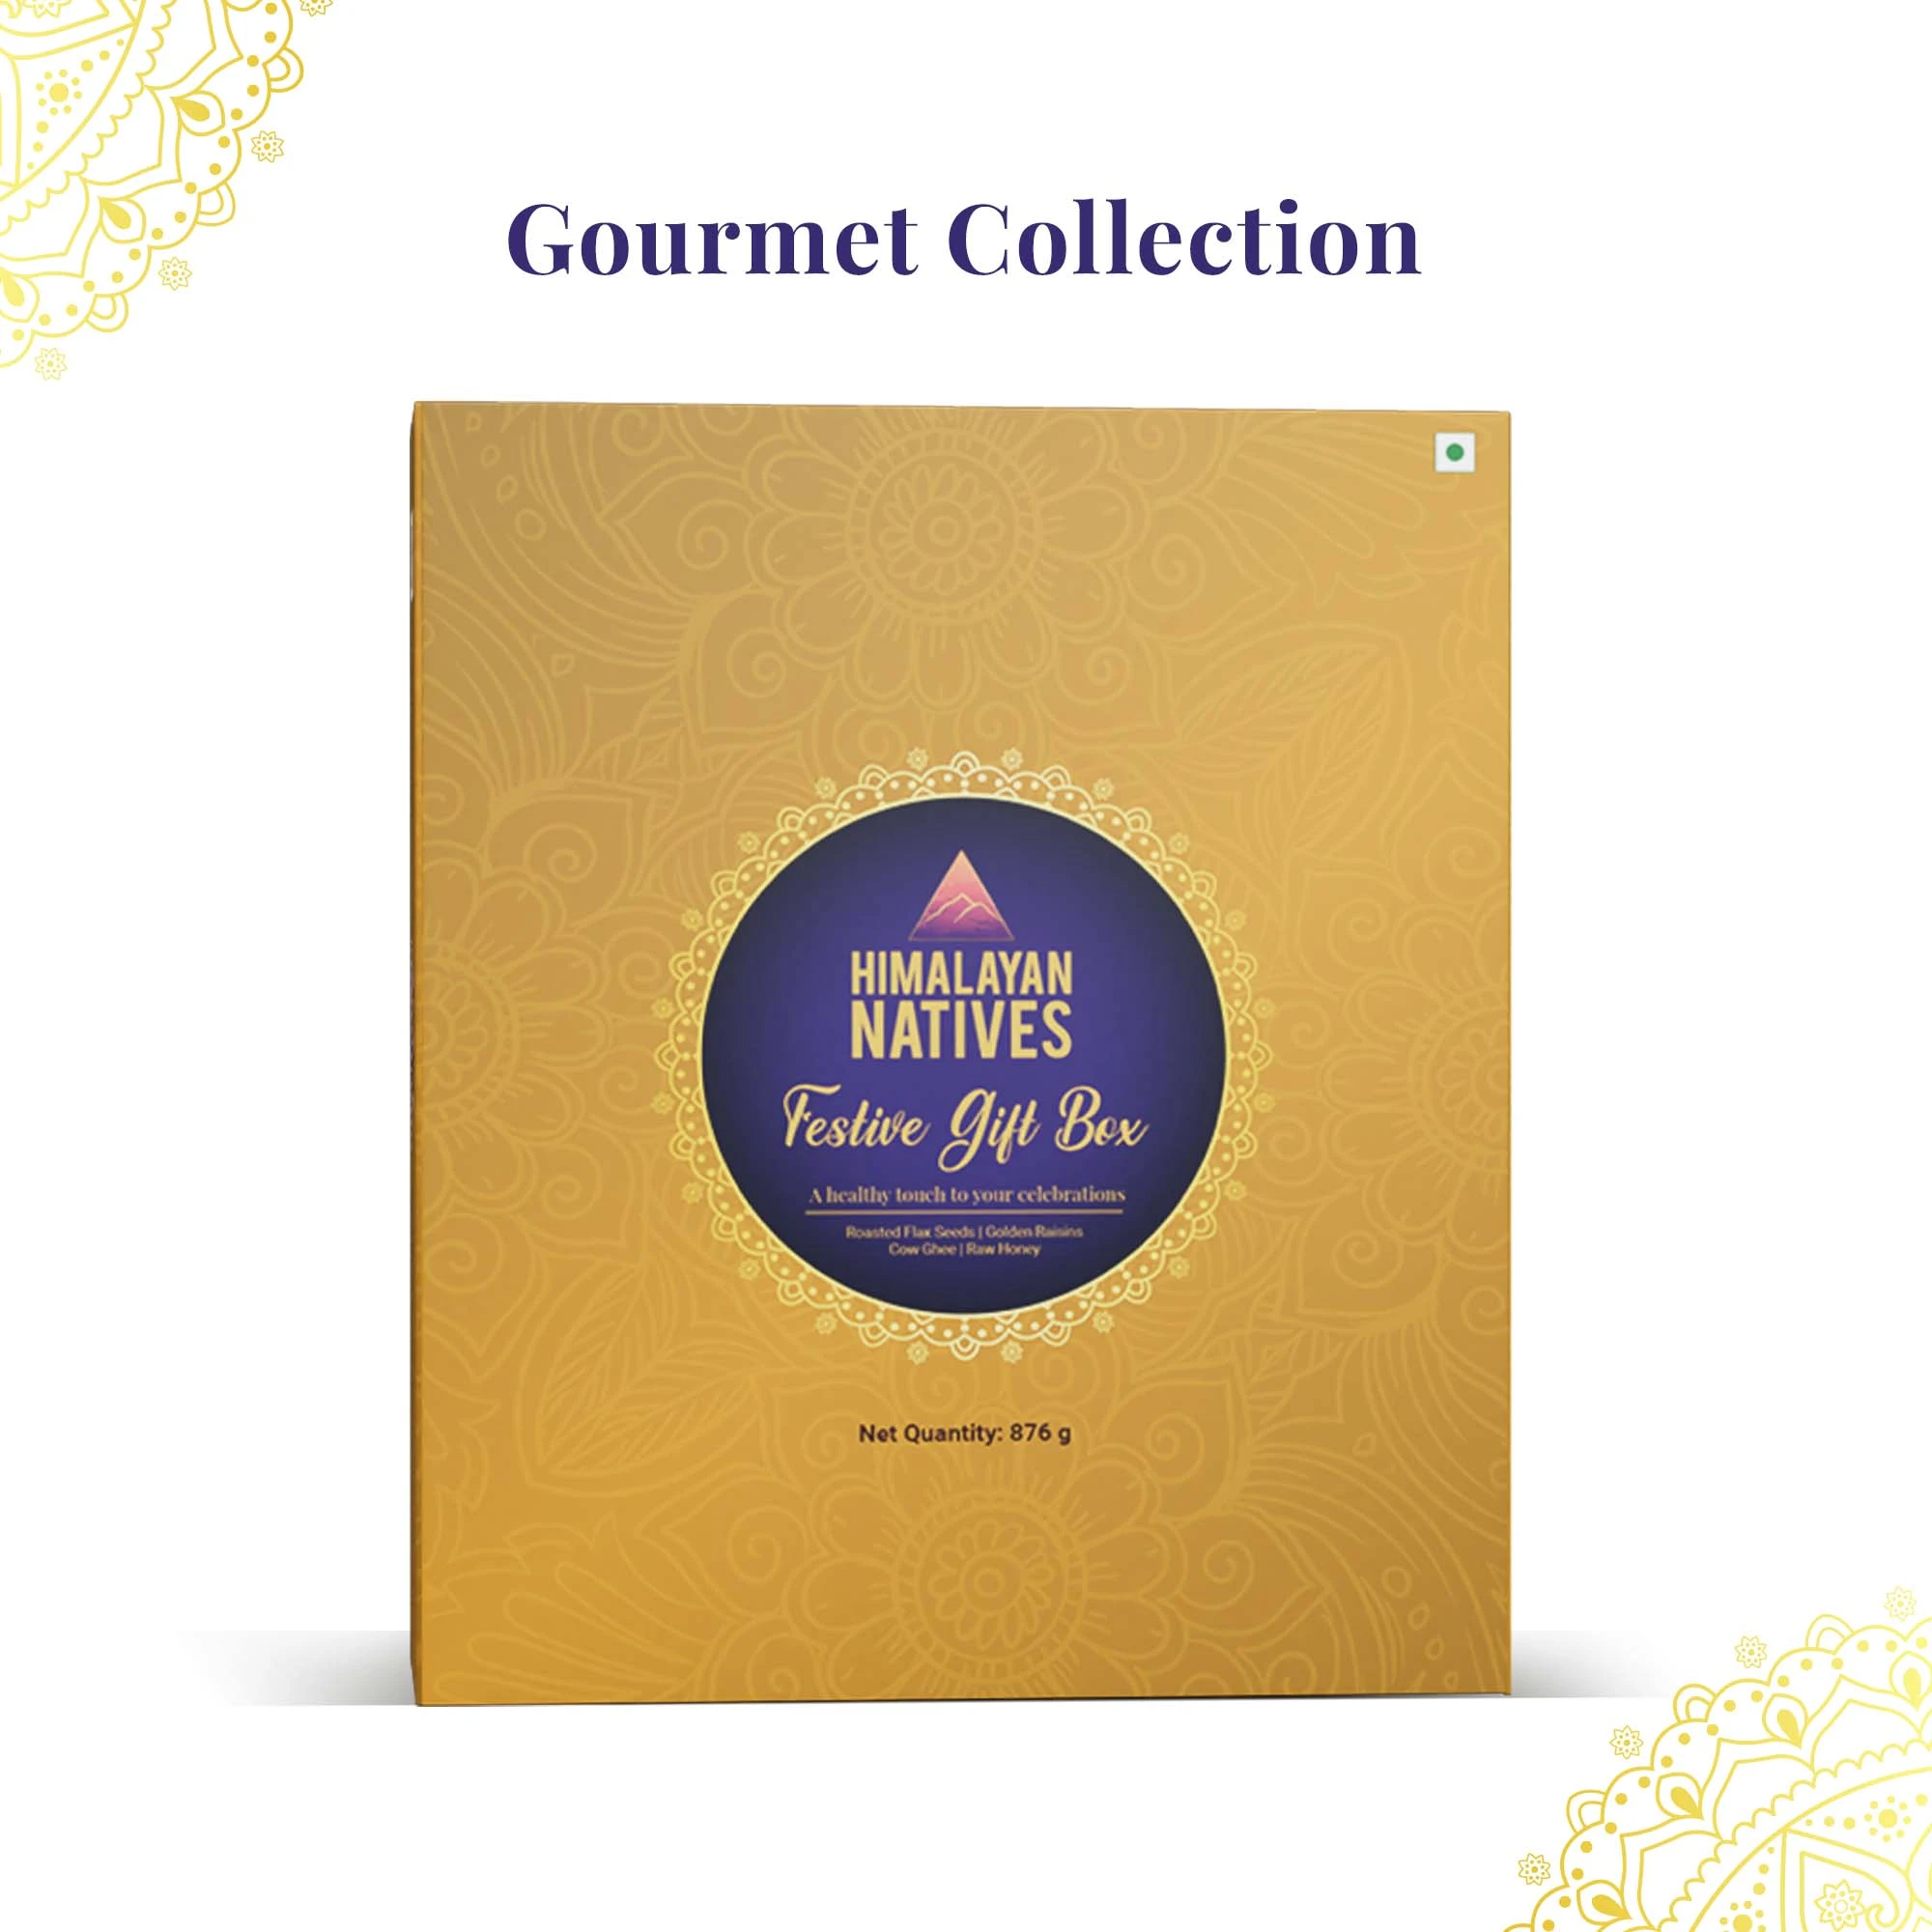 himalayan natives gourmet collection - product group